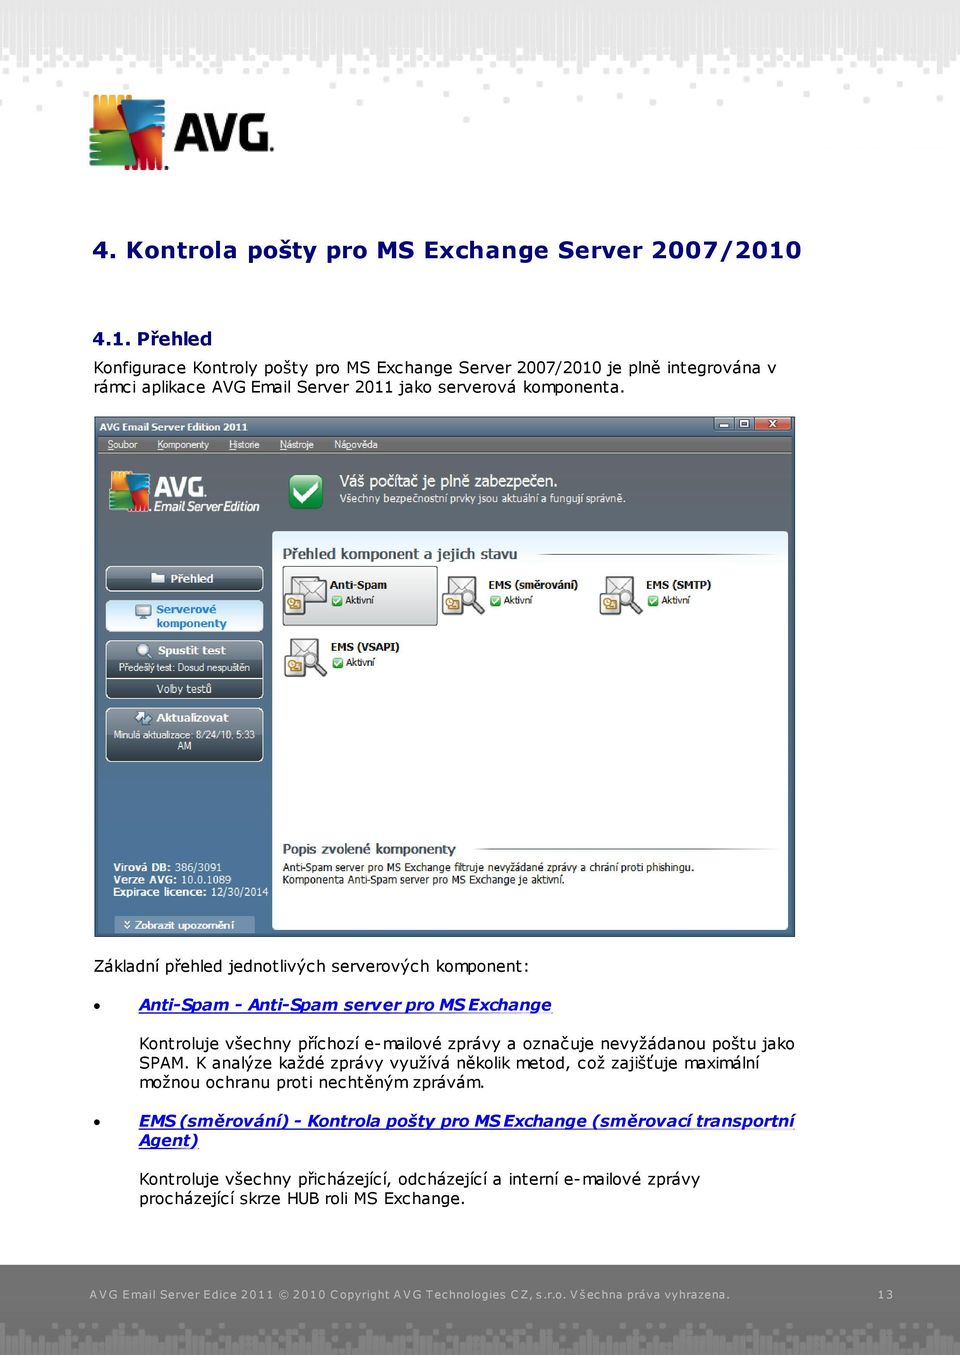 Základní přehled jednotlivých serverových komponent: Anti-Spam - Anti-Spam server pro MS Exchange Kontroluje všechny příchozí e-mailové zprávy a označuje nevyžádanou poštu